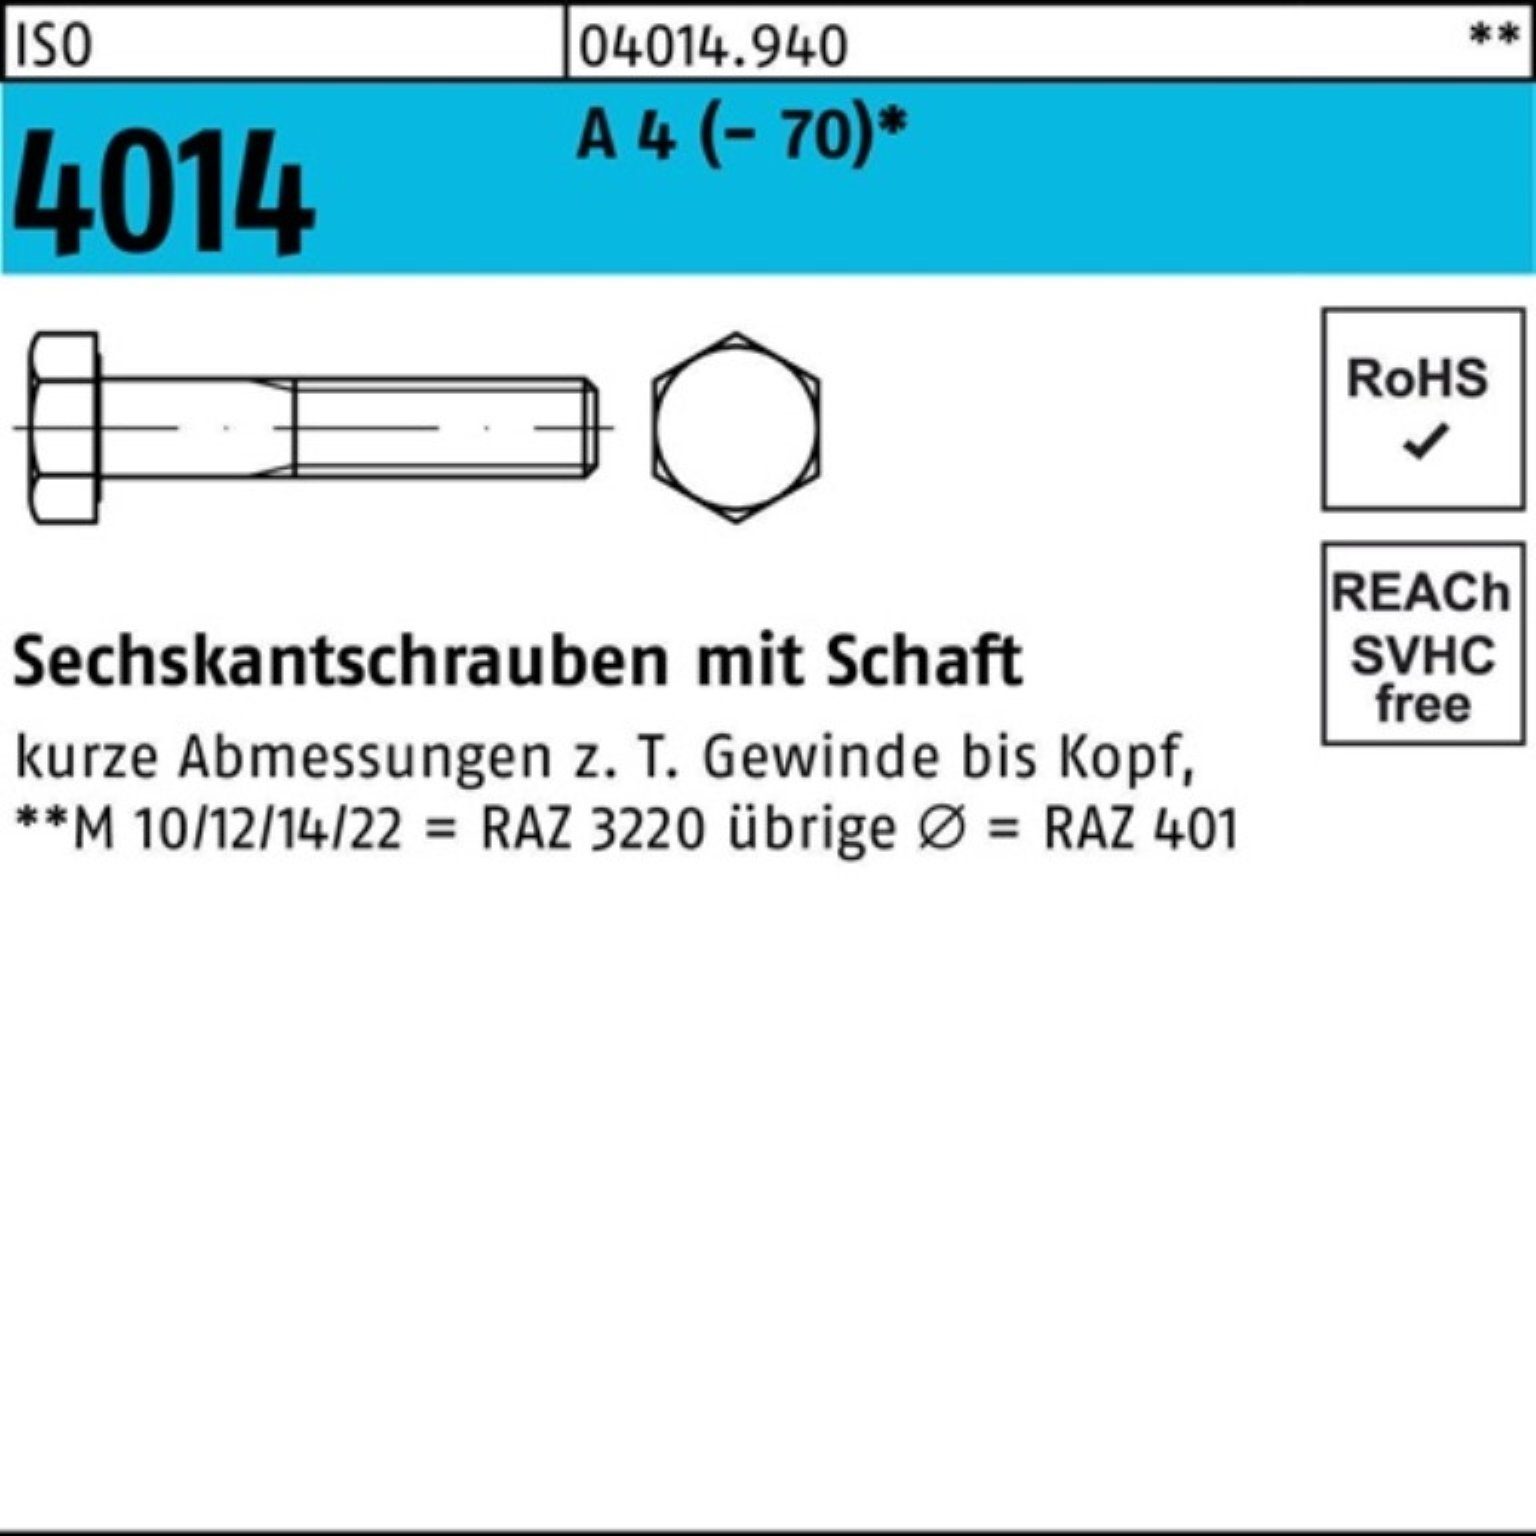 Bufab Sechskantschraube 100er Pack Sechskantschraube Schaft 4014 4 A 1 St ISO 220 (70) M16x